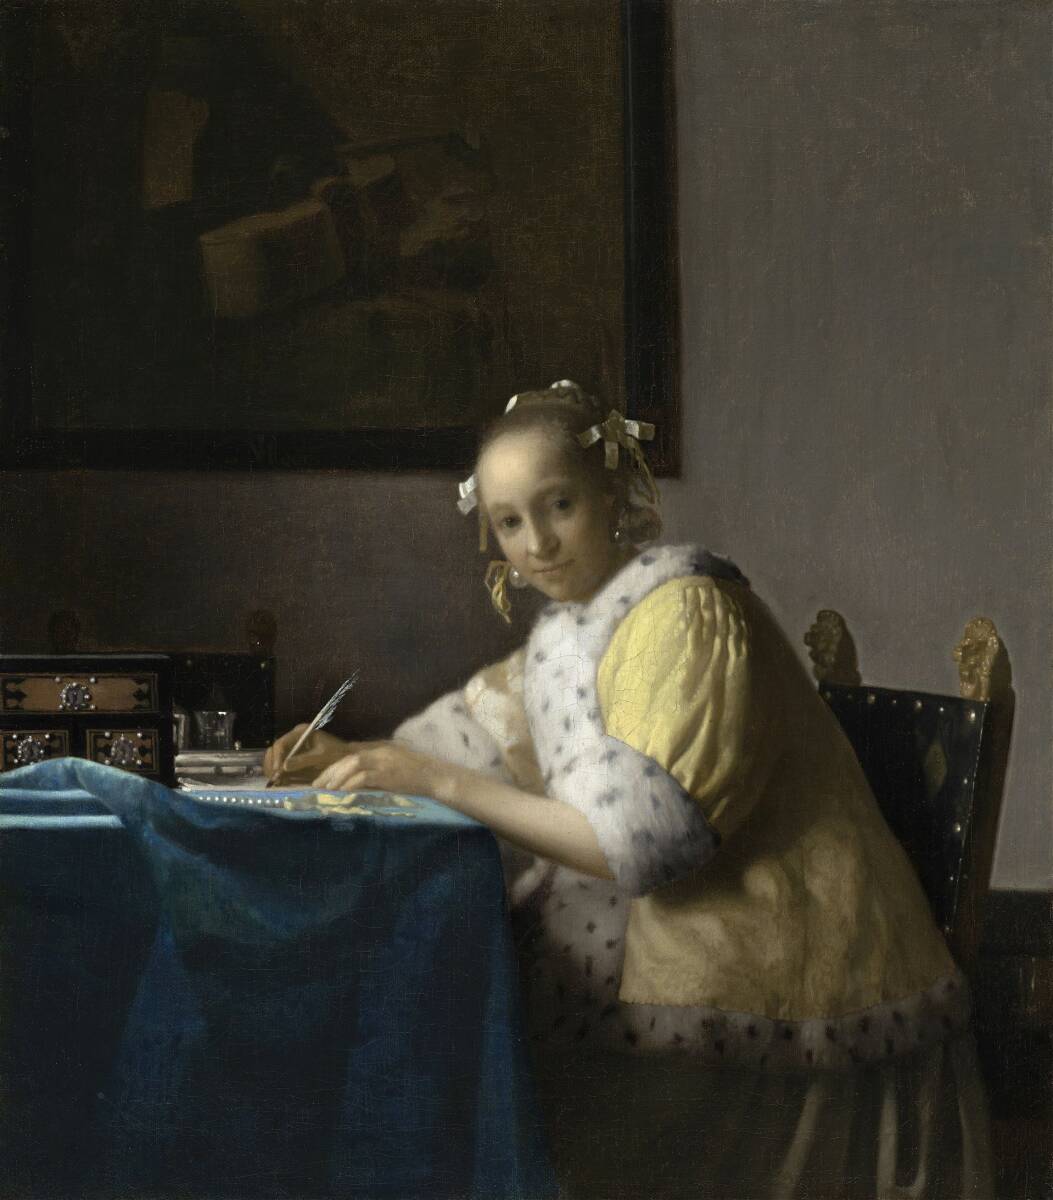 Nouvelle Femme de Vermeer écrivant une lettre technique spéciale impression de haute qualité format A4 sans cadre prix spécial 980 yens (frais de port inclus) Achetez-le maintenant, Ouvrages d'art, Peinture, autres